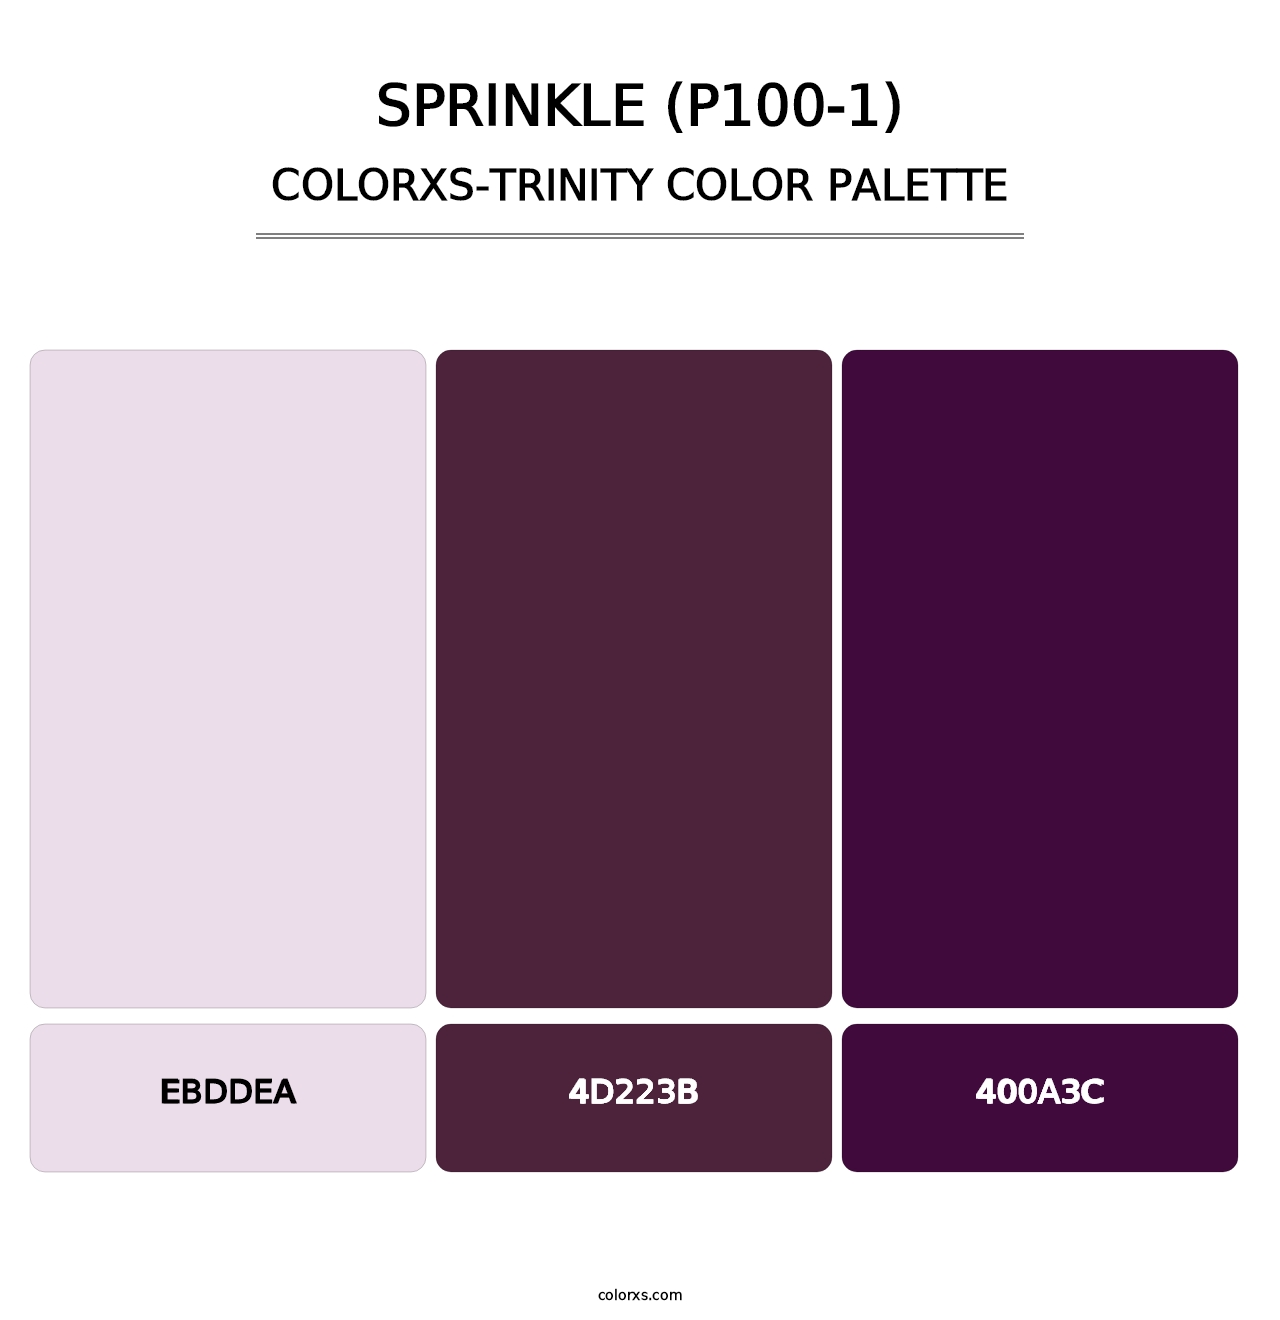 Sprinkle (P100-1) - Colorxs Trinity Palette